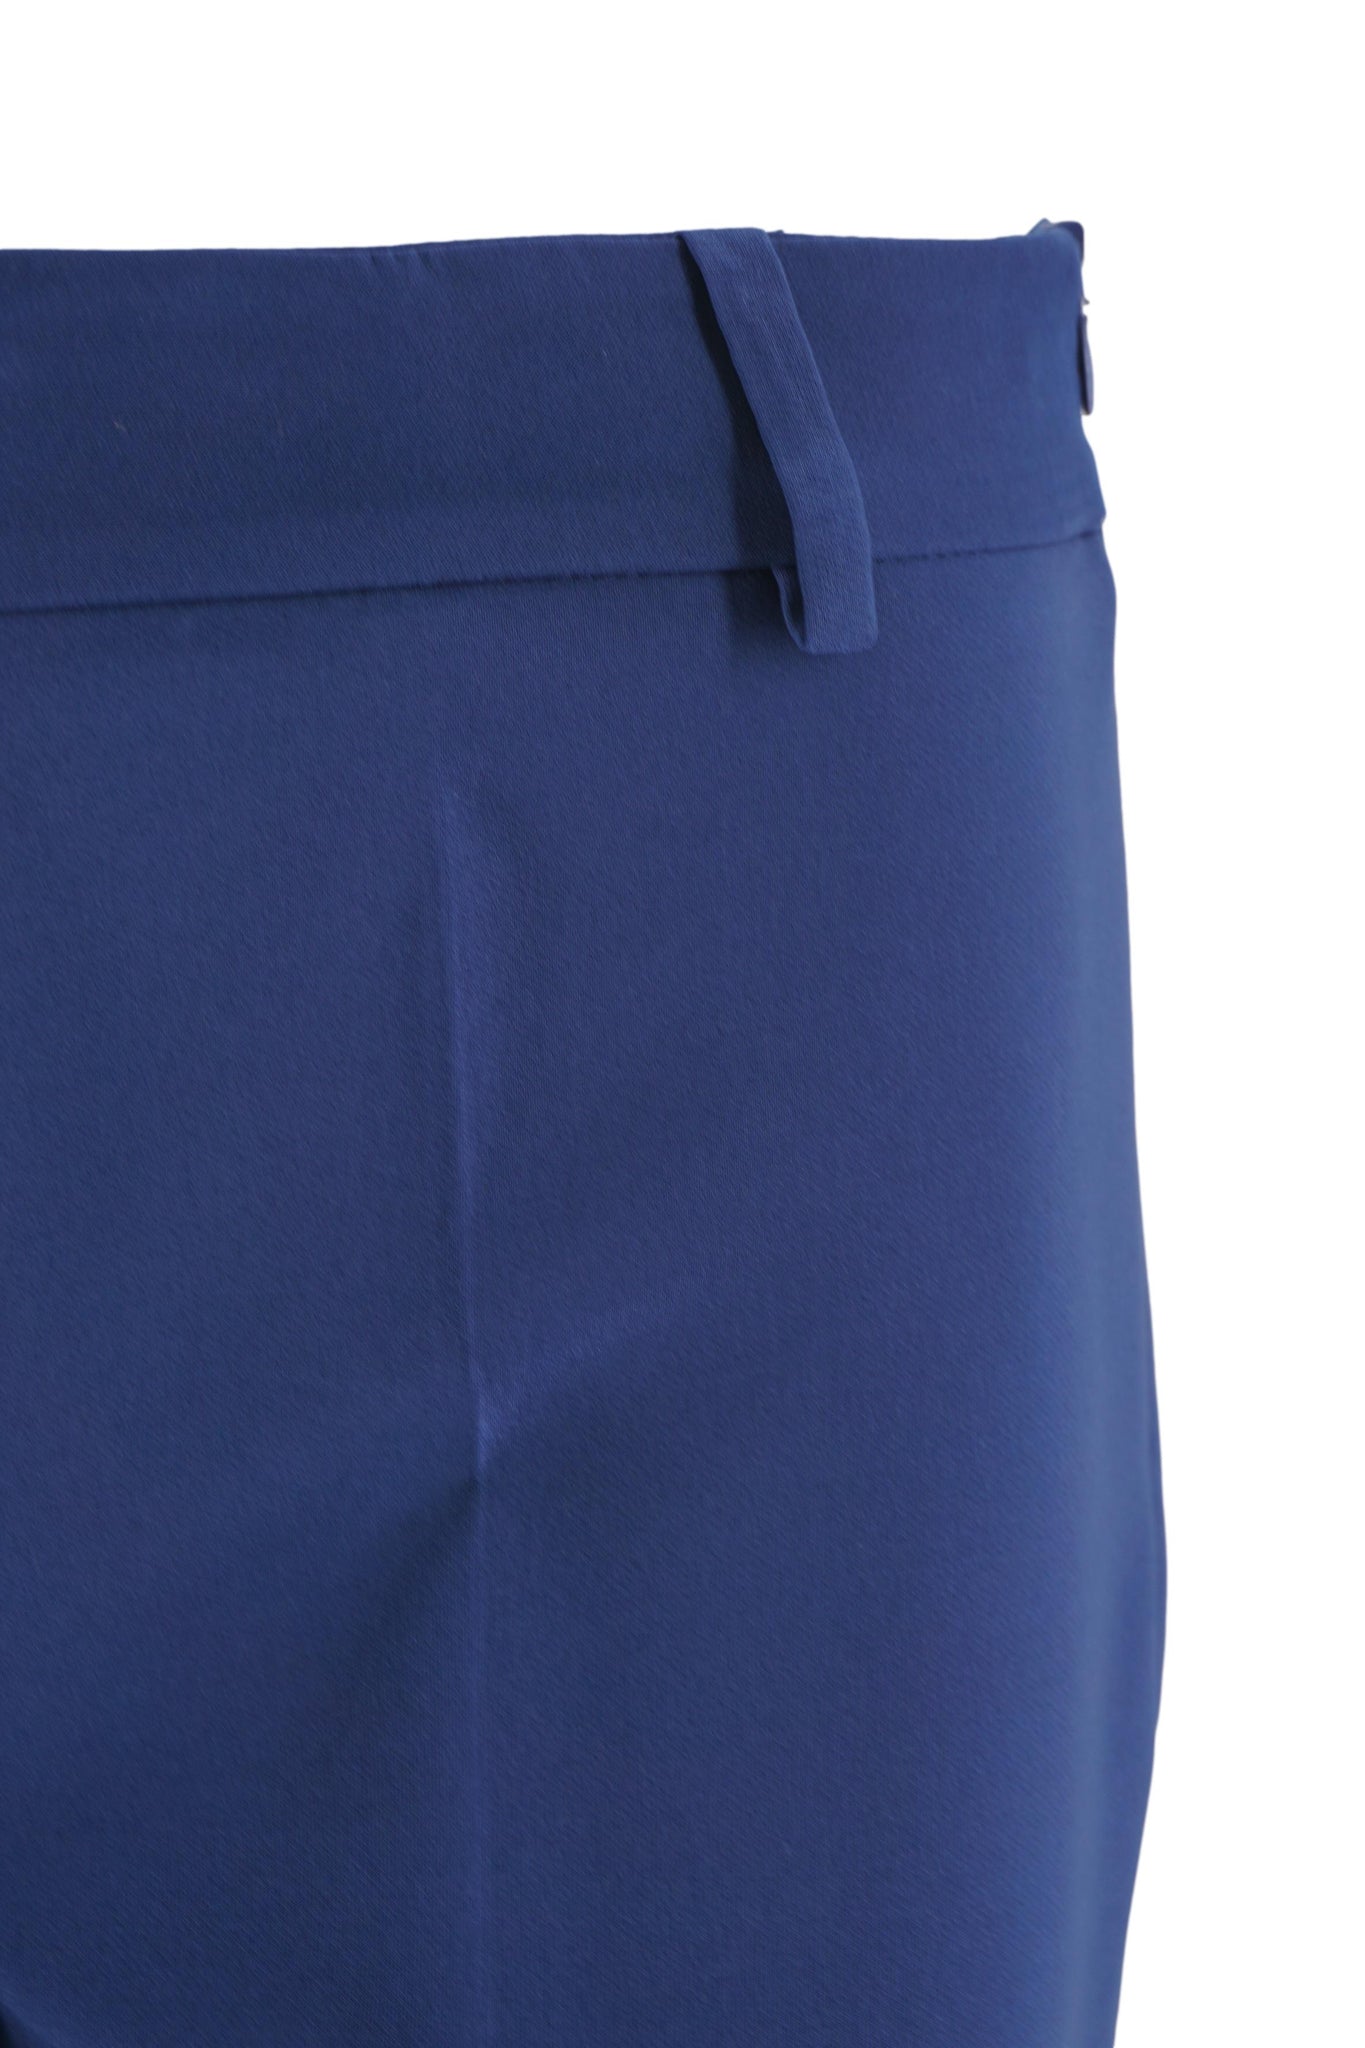 Pantalone Elegante con Pieghe / Bluette - Ideal Moda